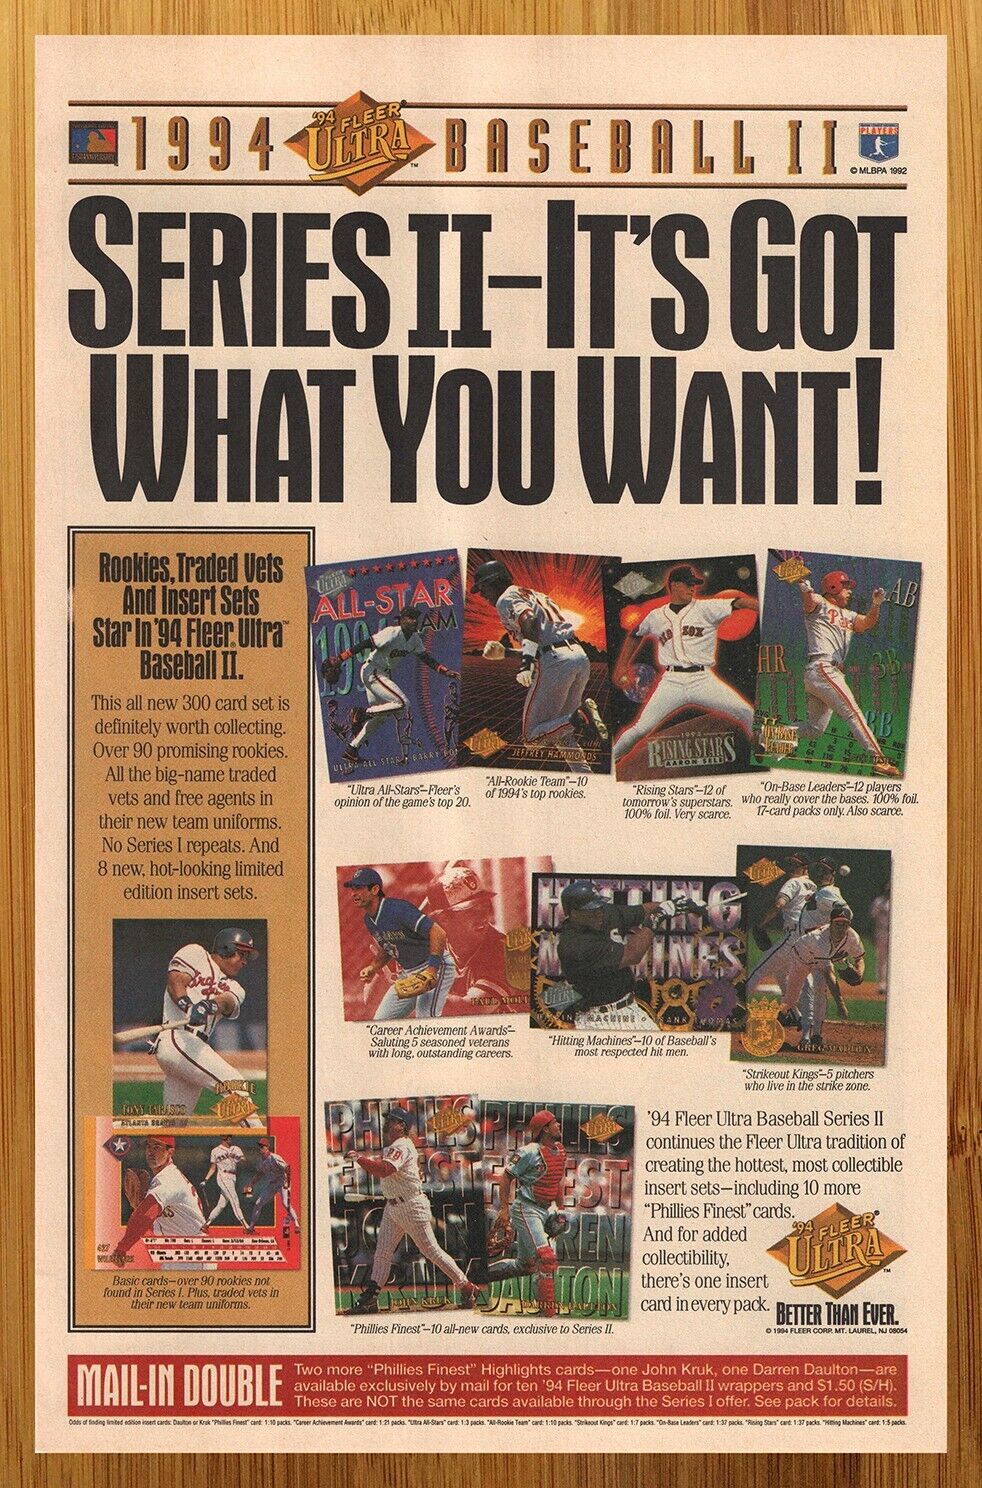 1994 Fleer Ultra Baseball II Trading Cards Print Ad/Poster MLB John Kruk Art 90s